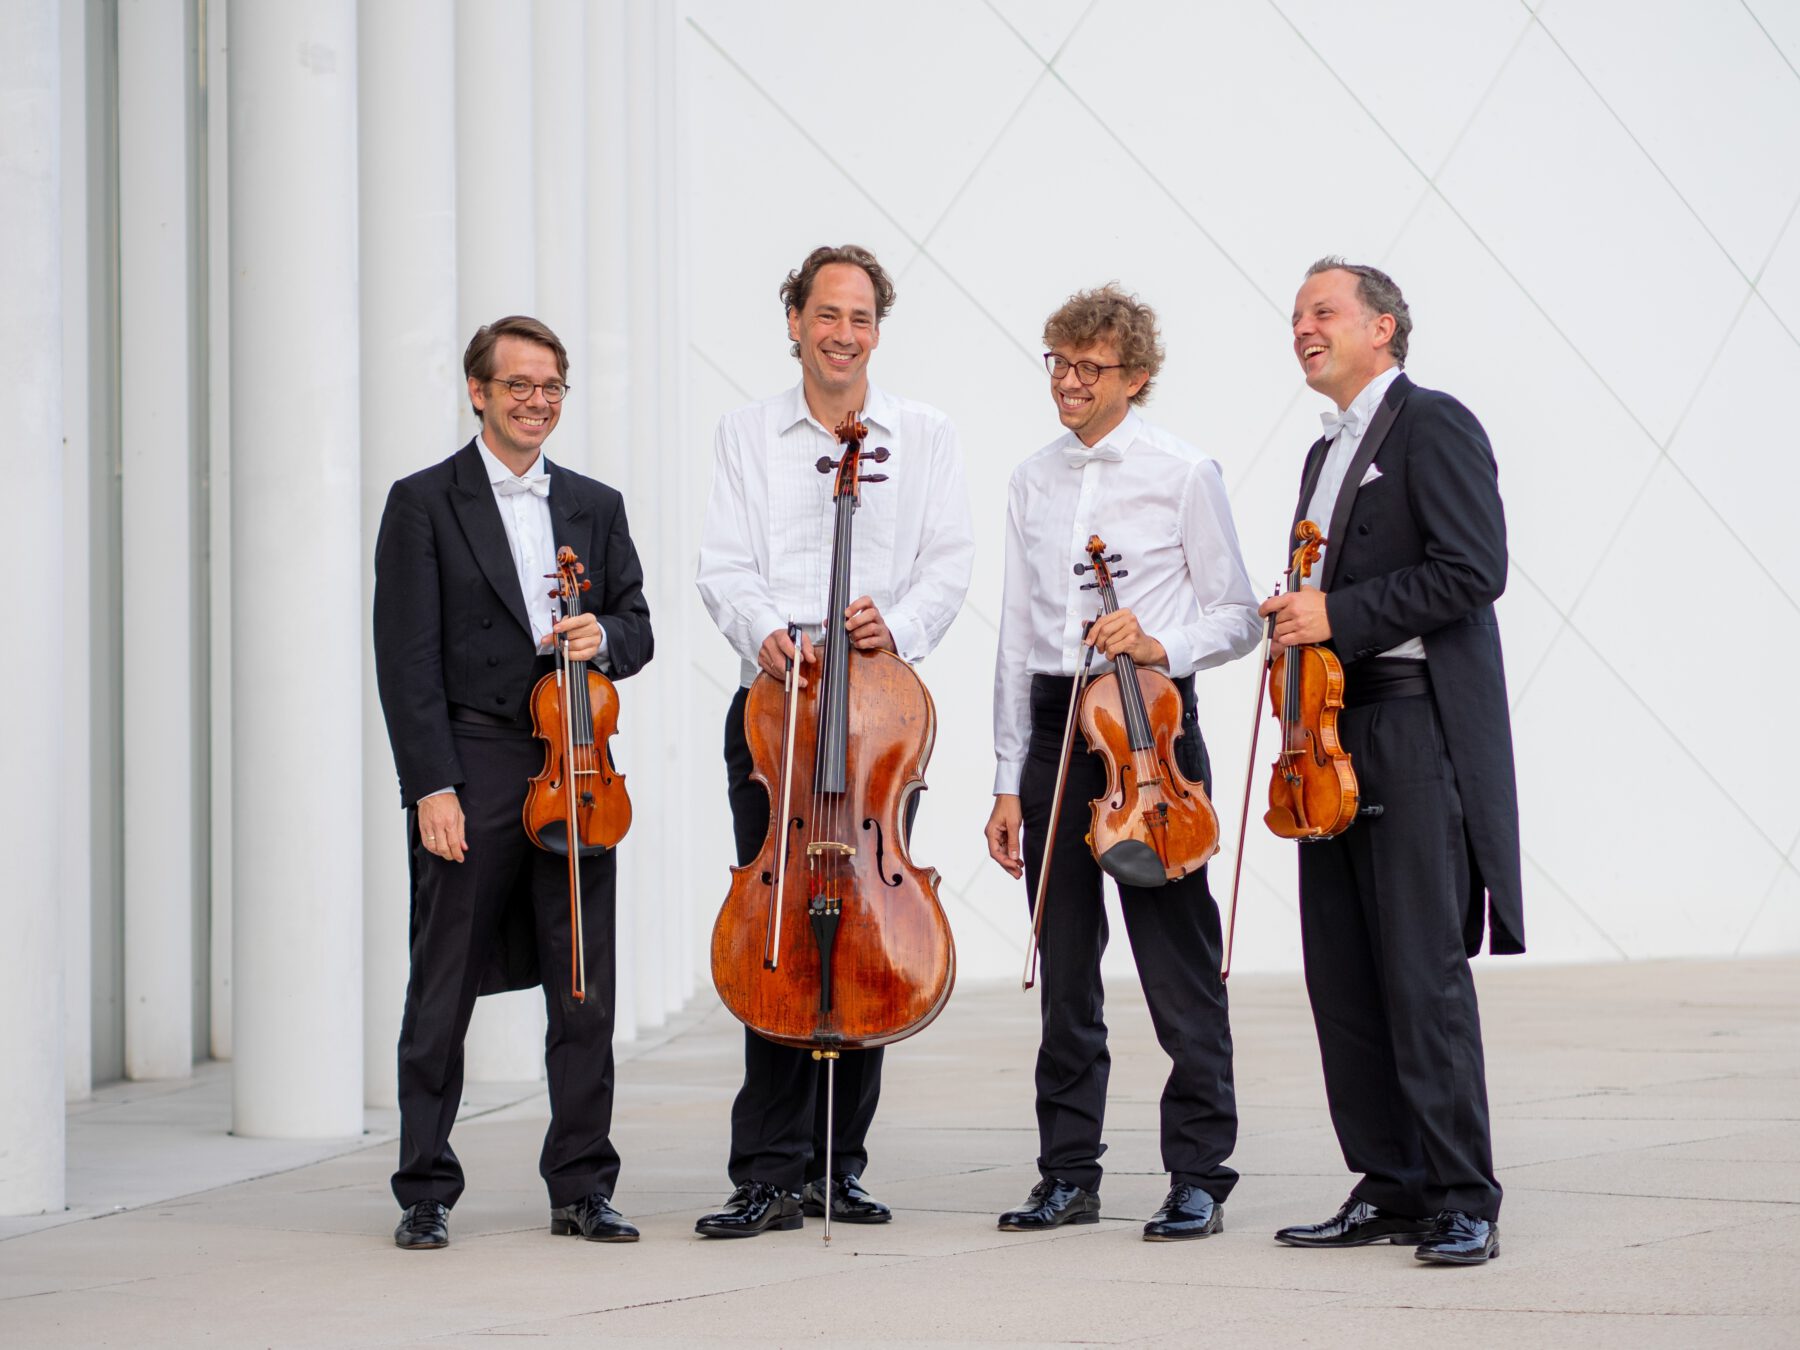 Varian Fry Quartett © Markus Weidmann